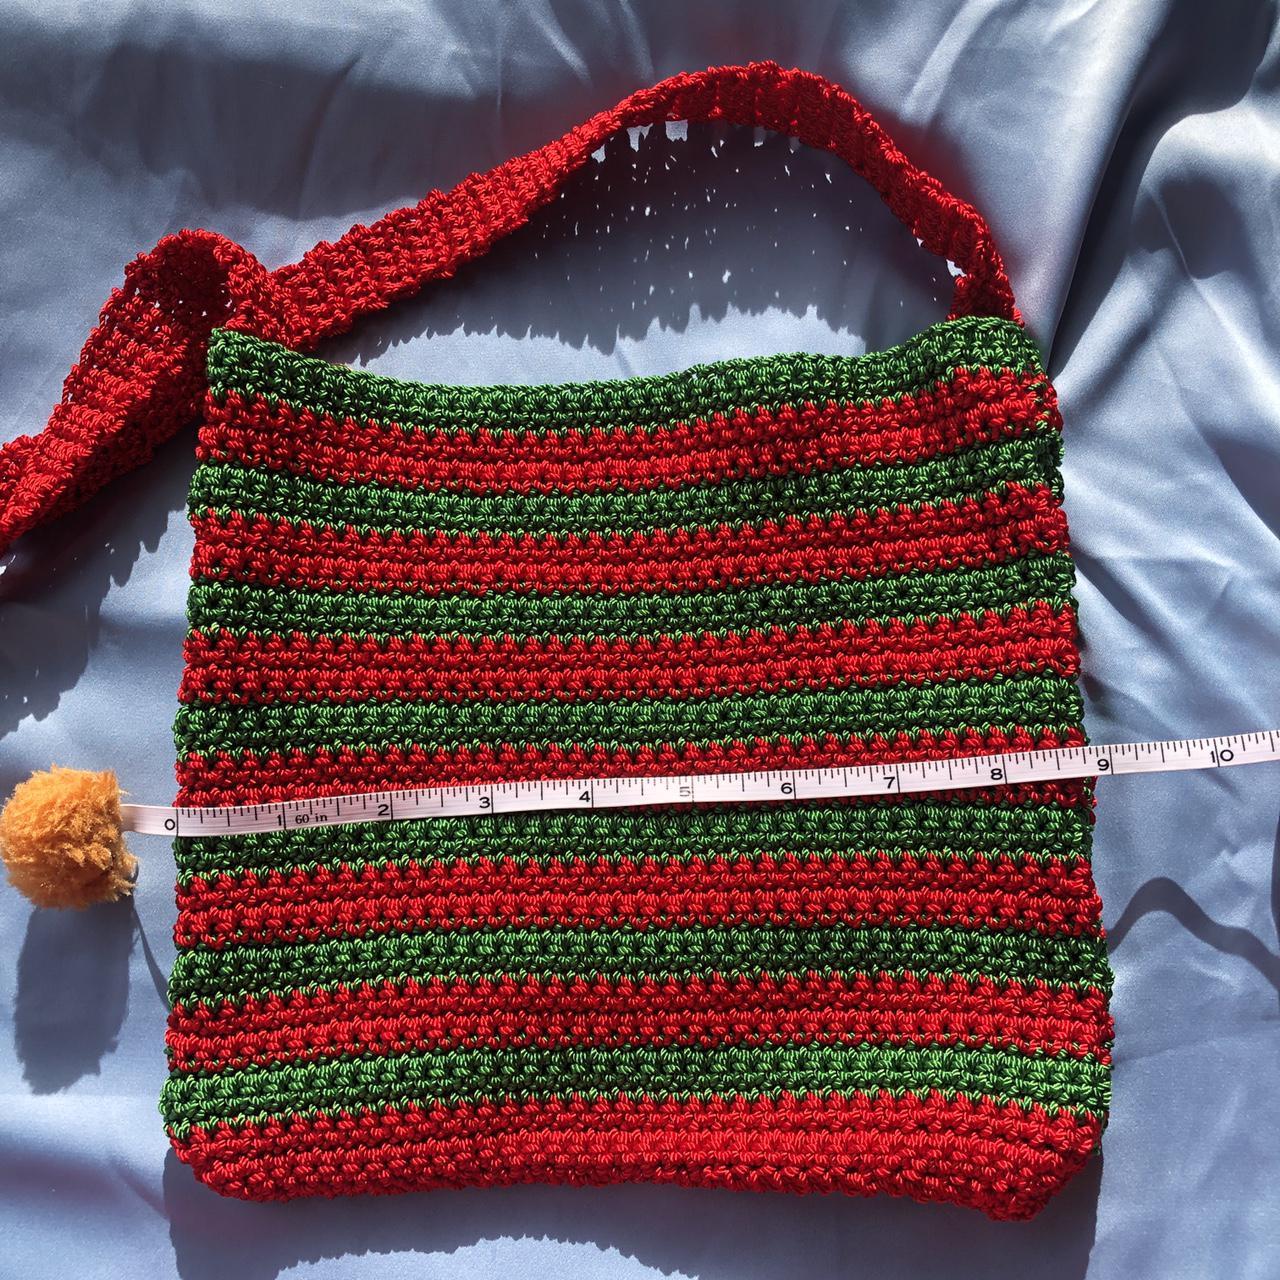 Product Image 3 - -Christmas Charms crochet bag
-APPROX: 8x8.5